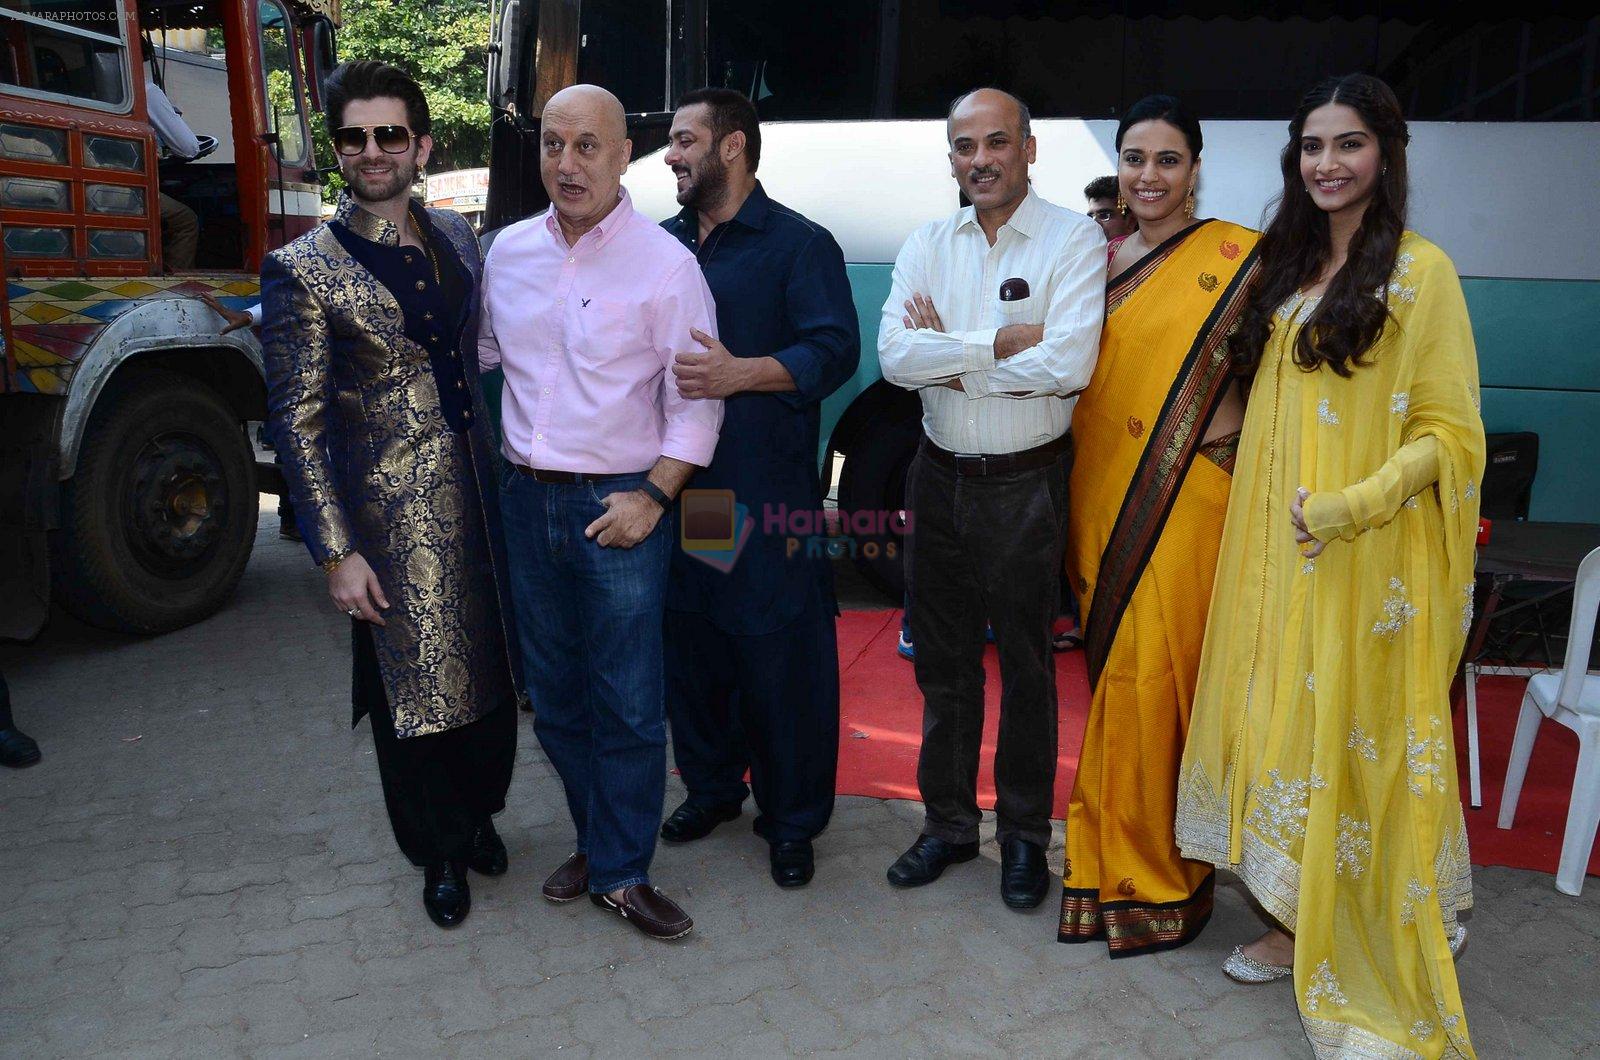 Neil Mukesh, Anupam Kher, Salman Khan, Sooraj Barjatya, Swara Bhaskar, Sonam Kapoor at prem ratan dhan payo dharavi Band on 11th Nov 2015